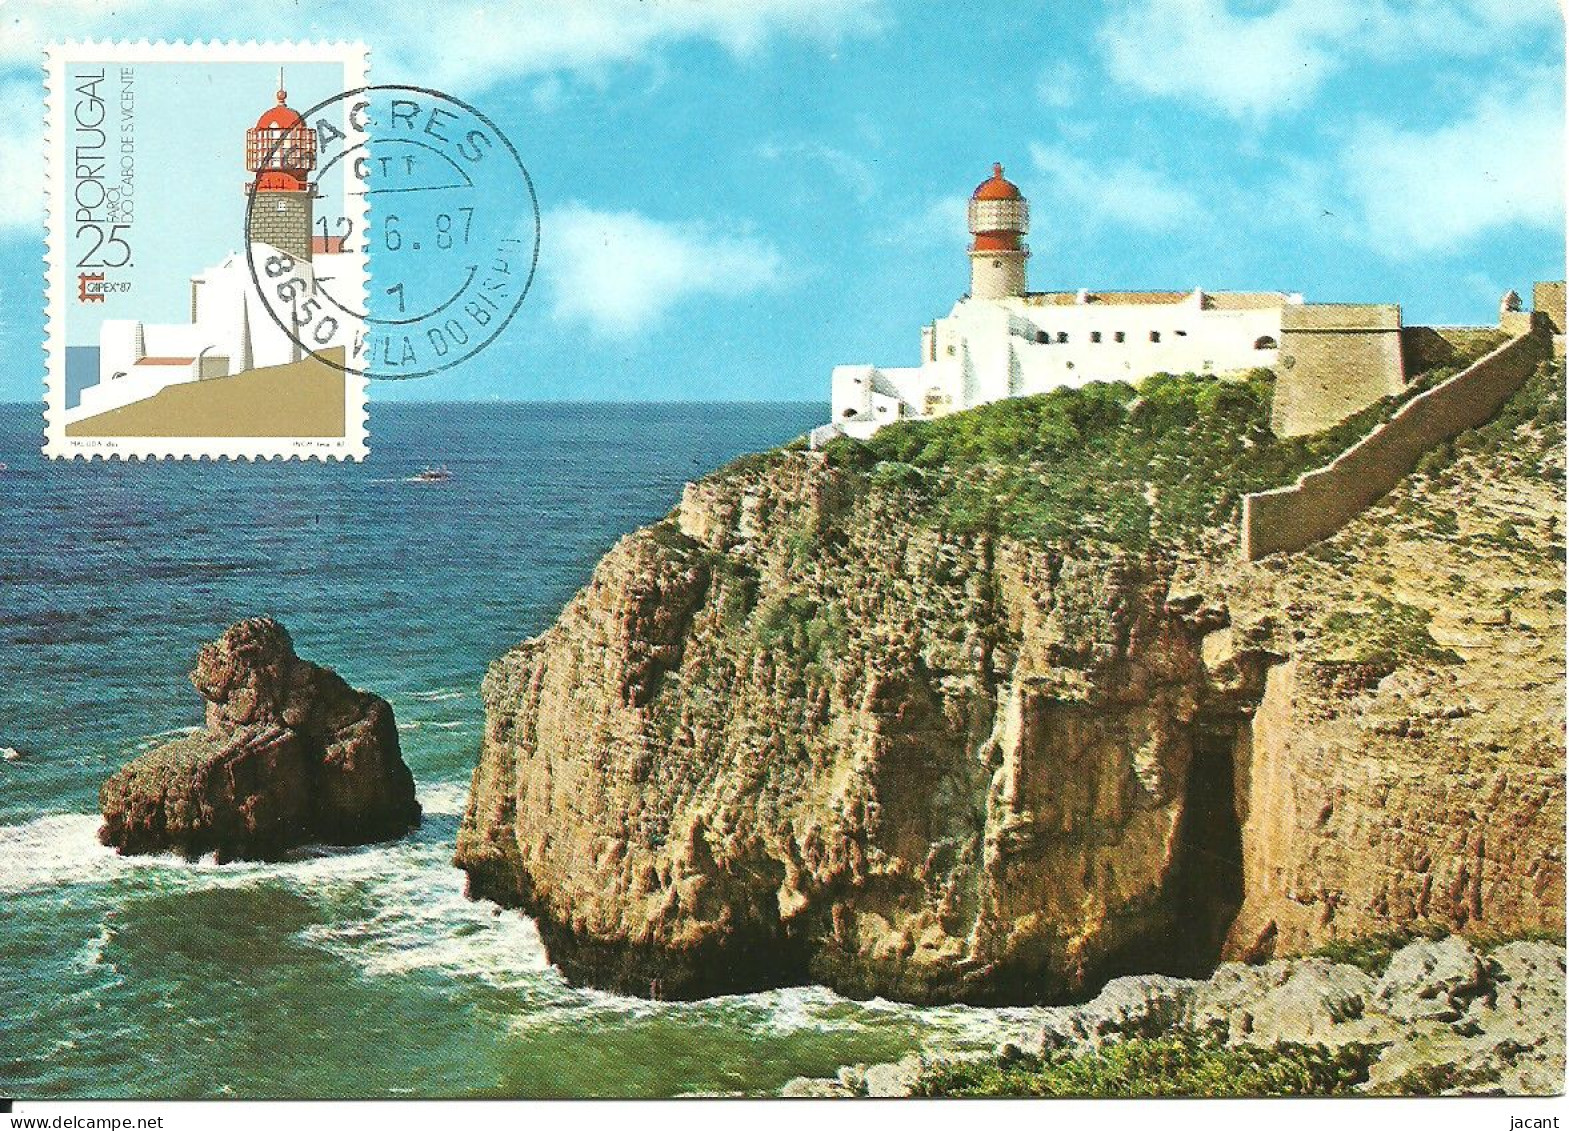 30851 - Carte Maximum - Portugal - Farol Do Cabo De S. Vicente Sagres - Phare - Lighthouse - Cartes-maximum (CM)